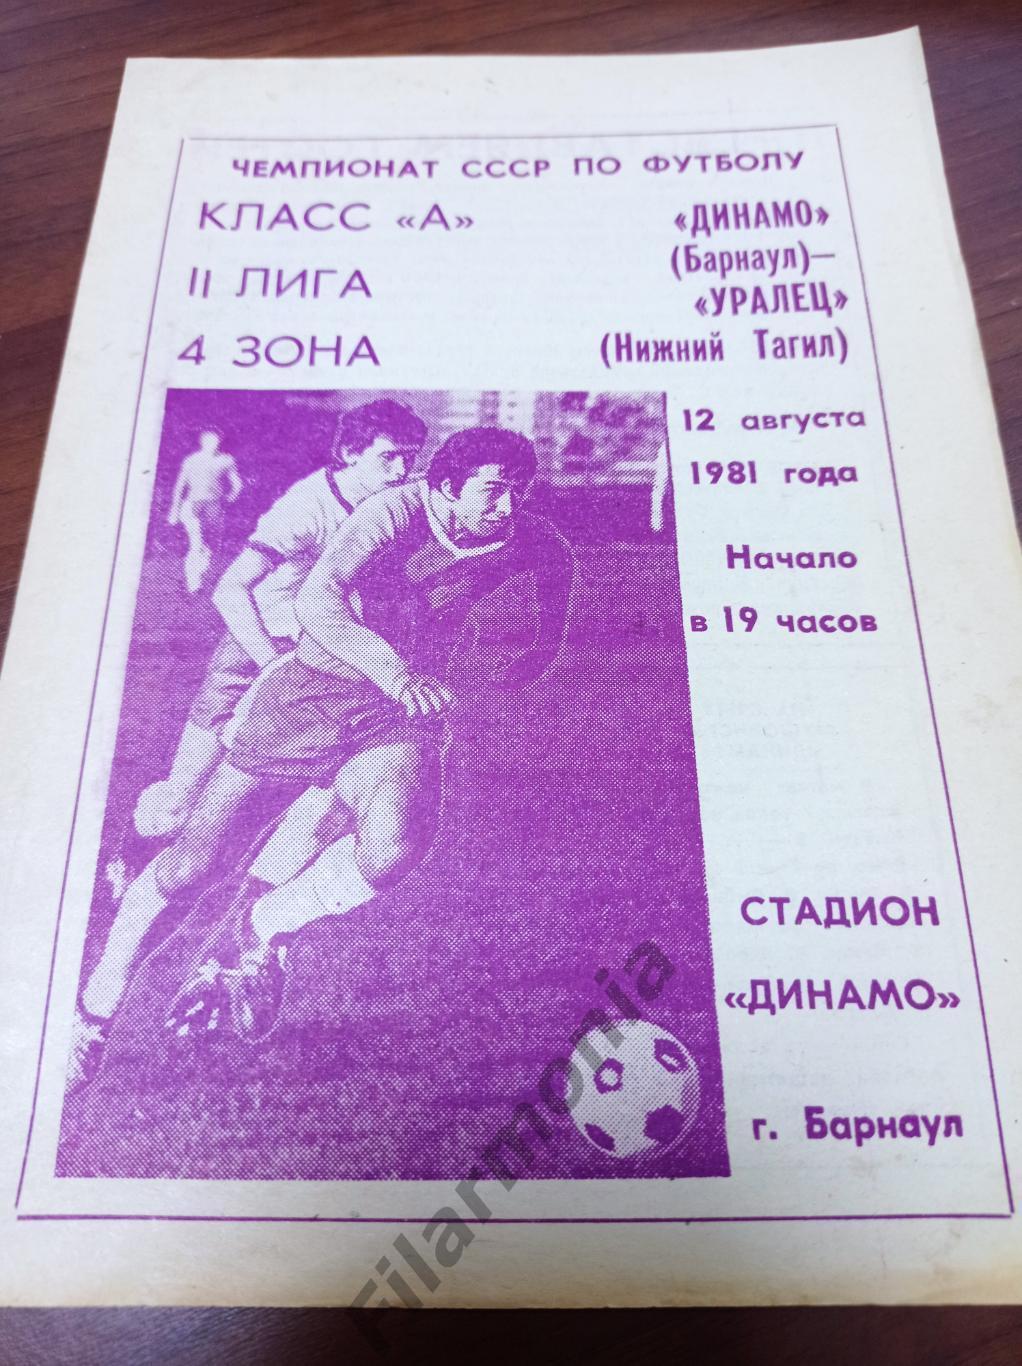 1981 Динамо Барнаул - Уралец Нижний Тагил